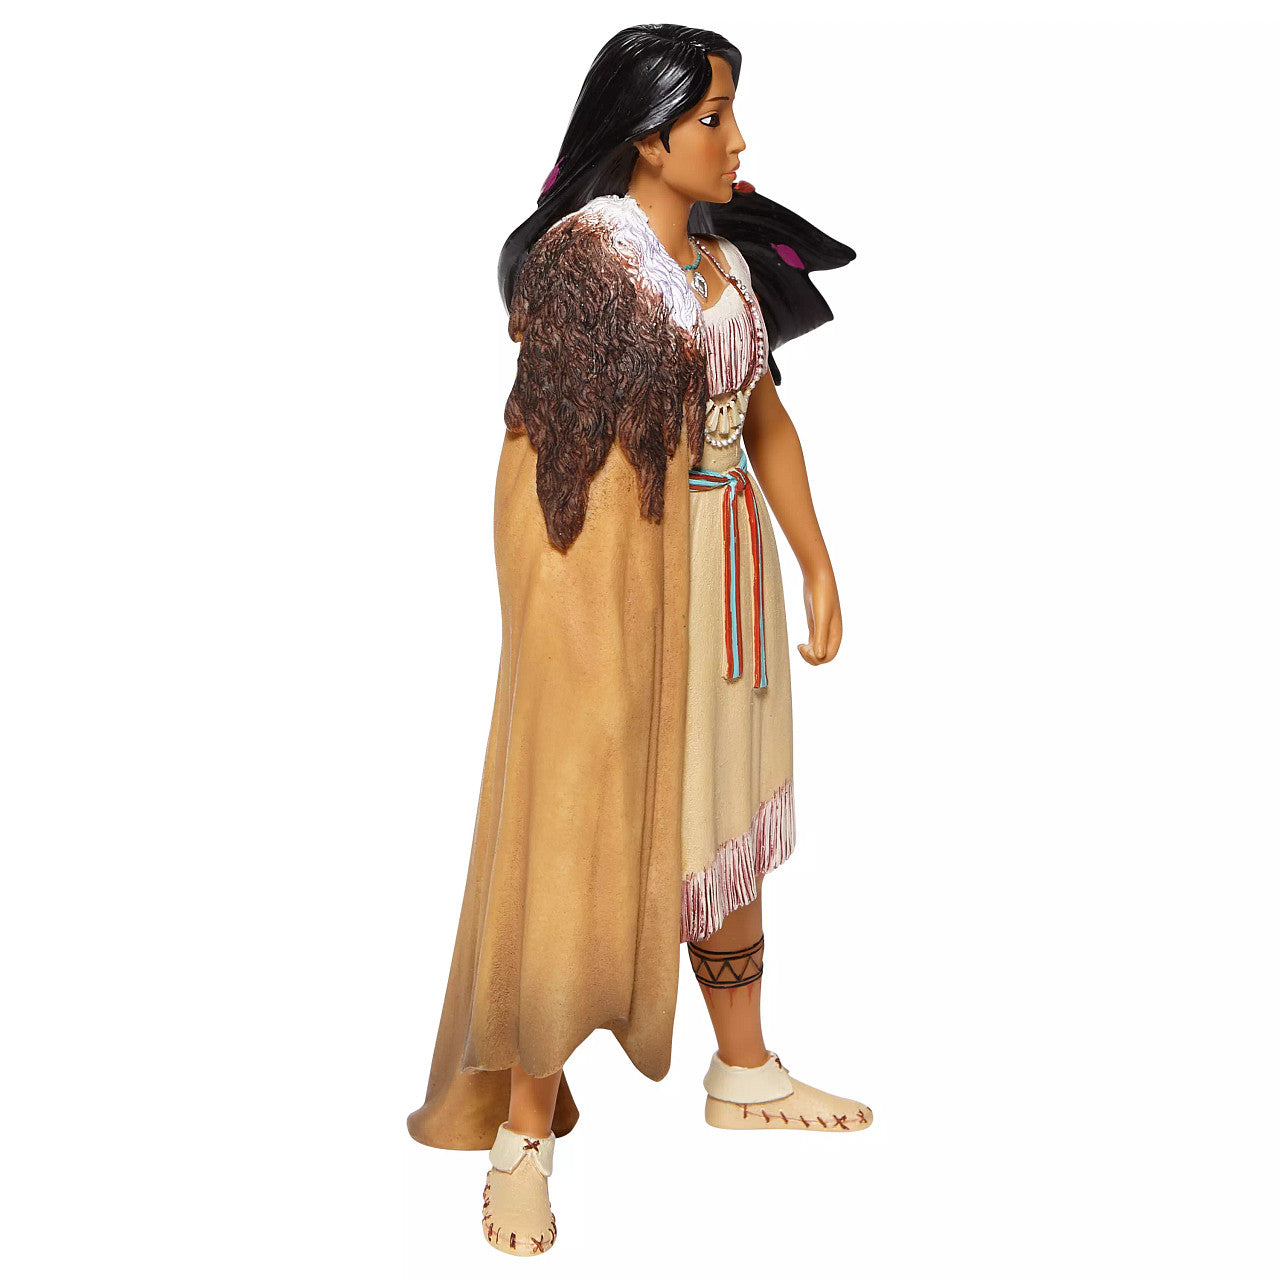 Pocahontas Figurine